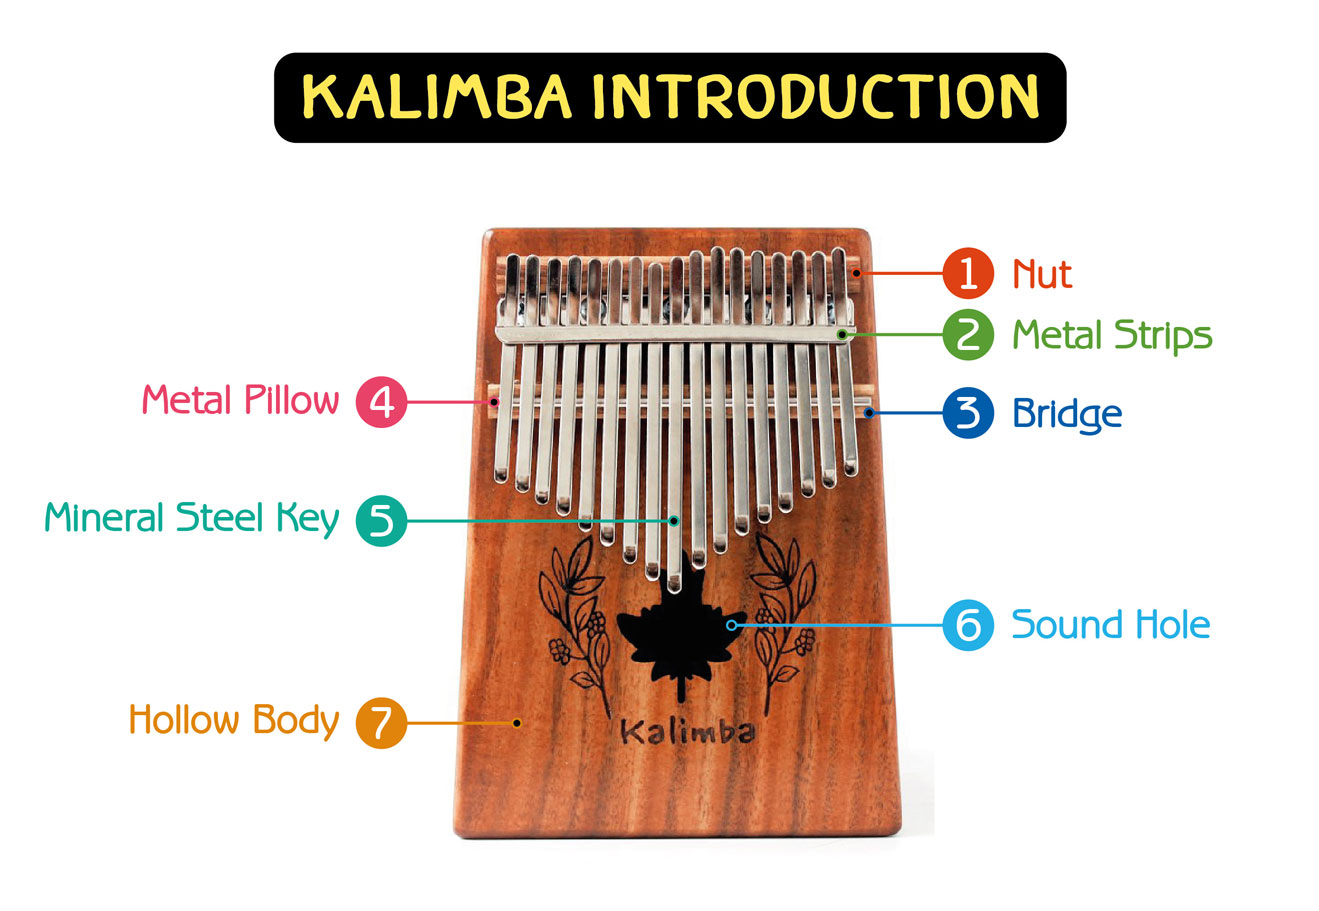 ส่วนประกอบของ Kalimba